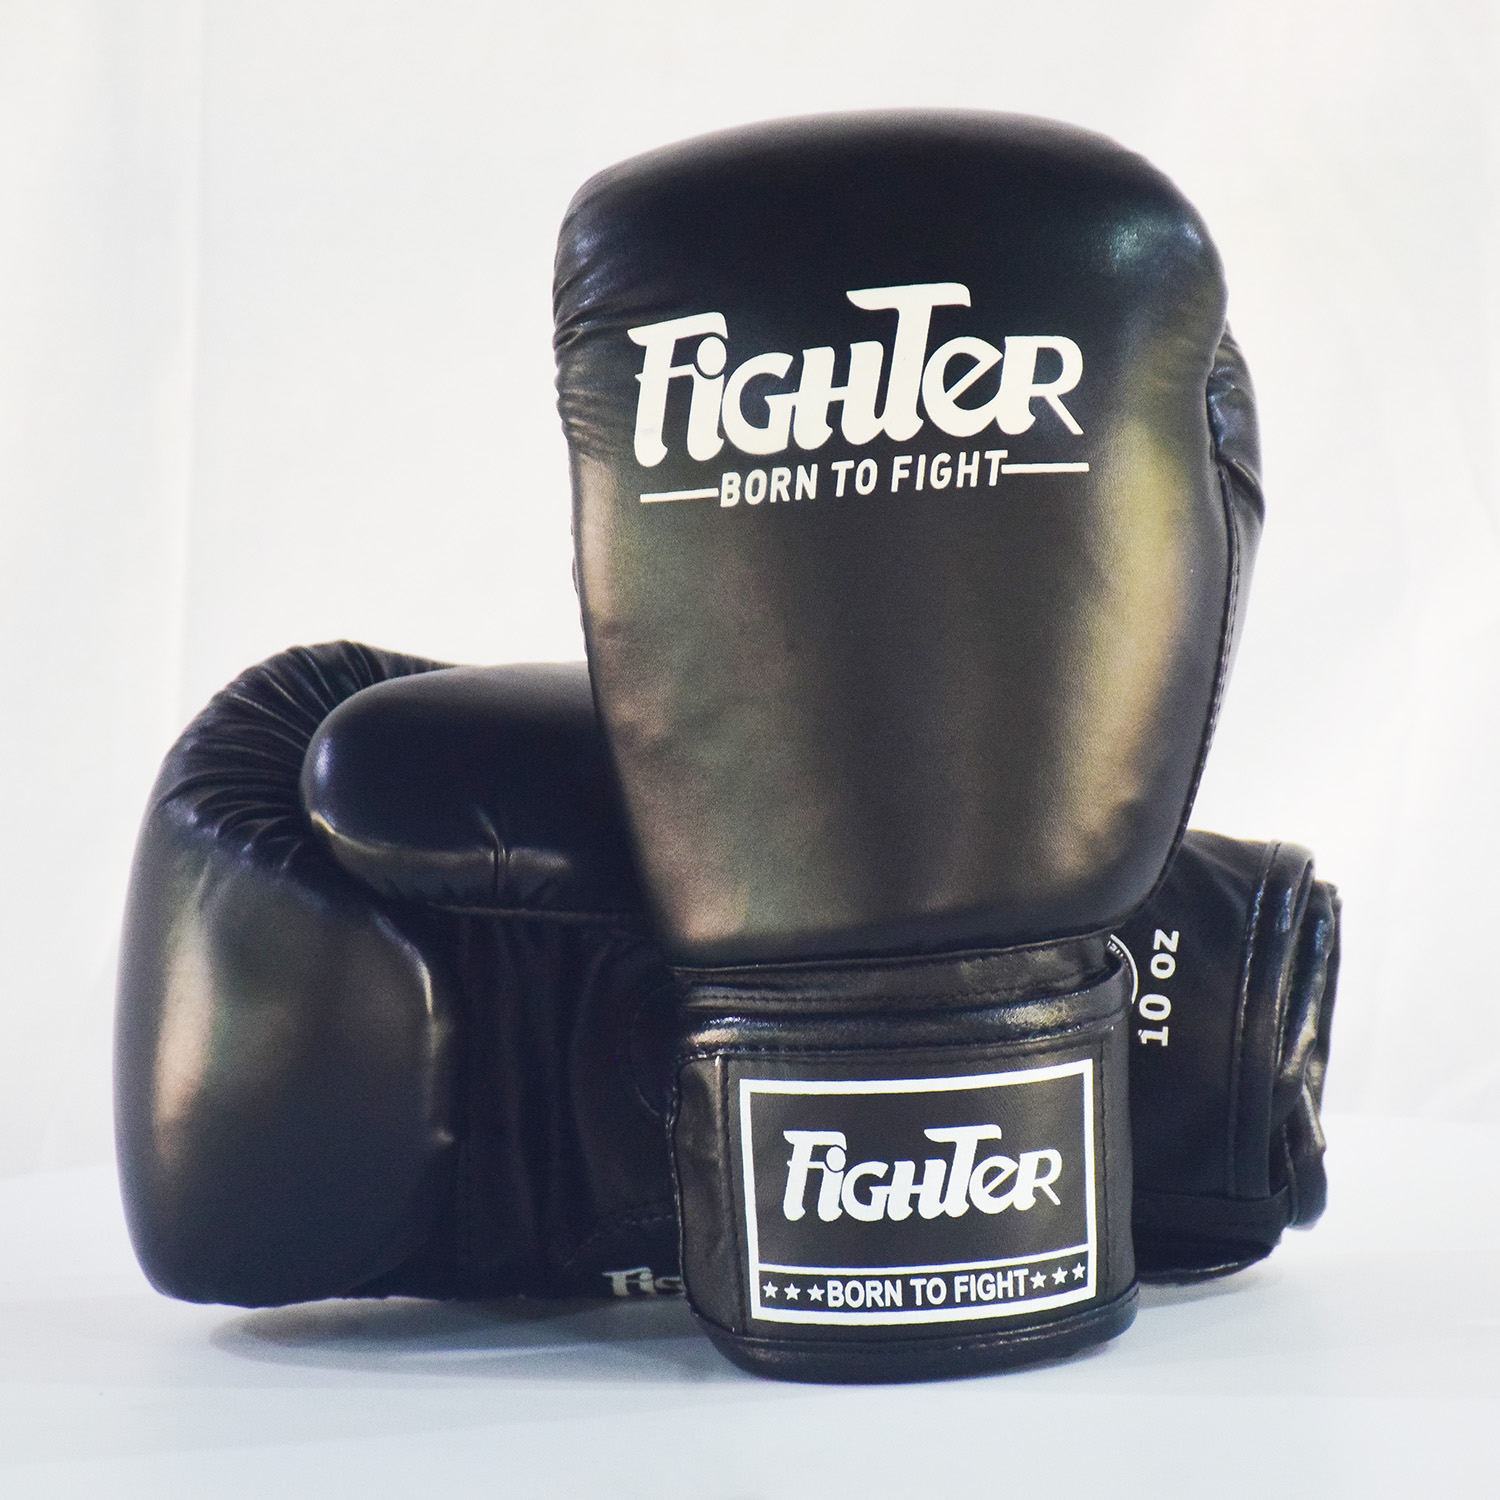 Găng Boxing Fighter - Màu Đen | Dùng cho Boxing, Muay, KickBoxing, Võ Cổ Truyền